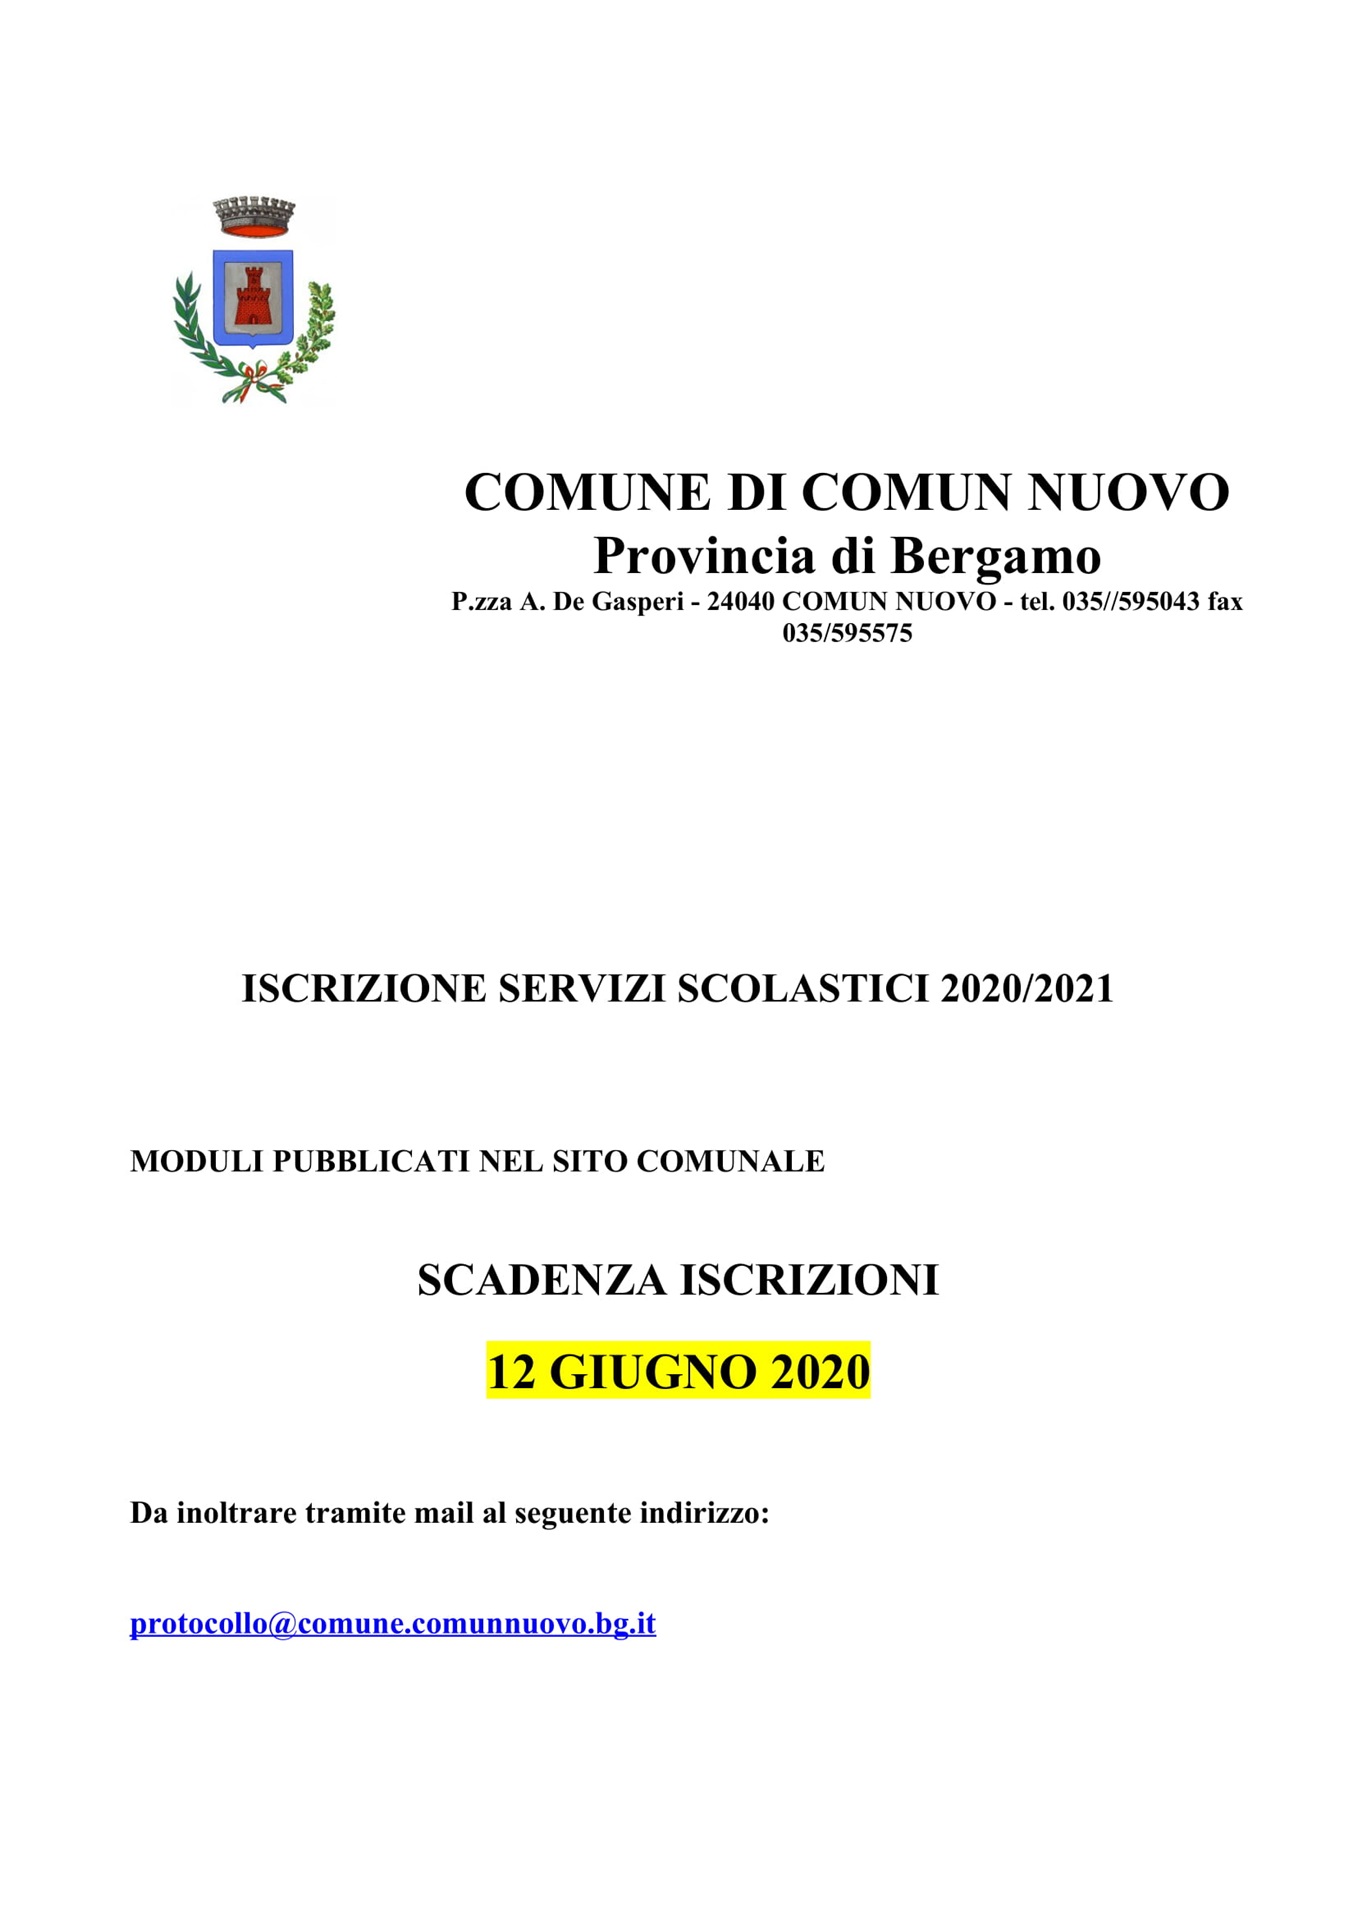 DOMANDE SERVIZI SCOLASTICI 2020/2021 - SCADENZA 12.06.2020